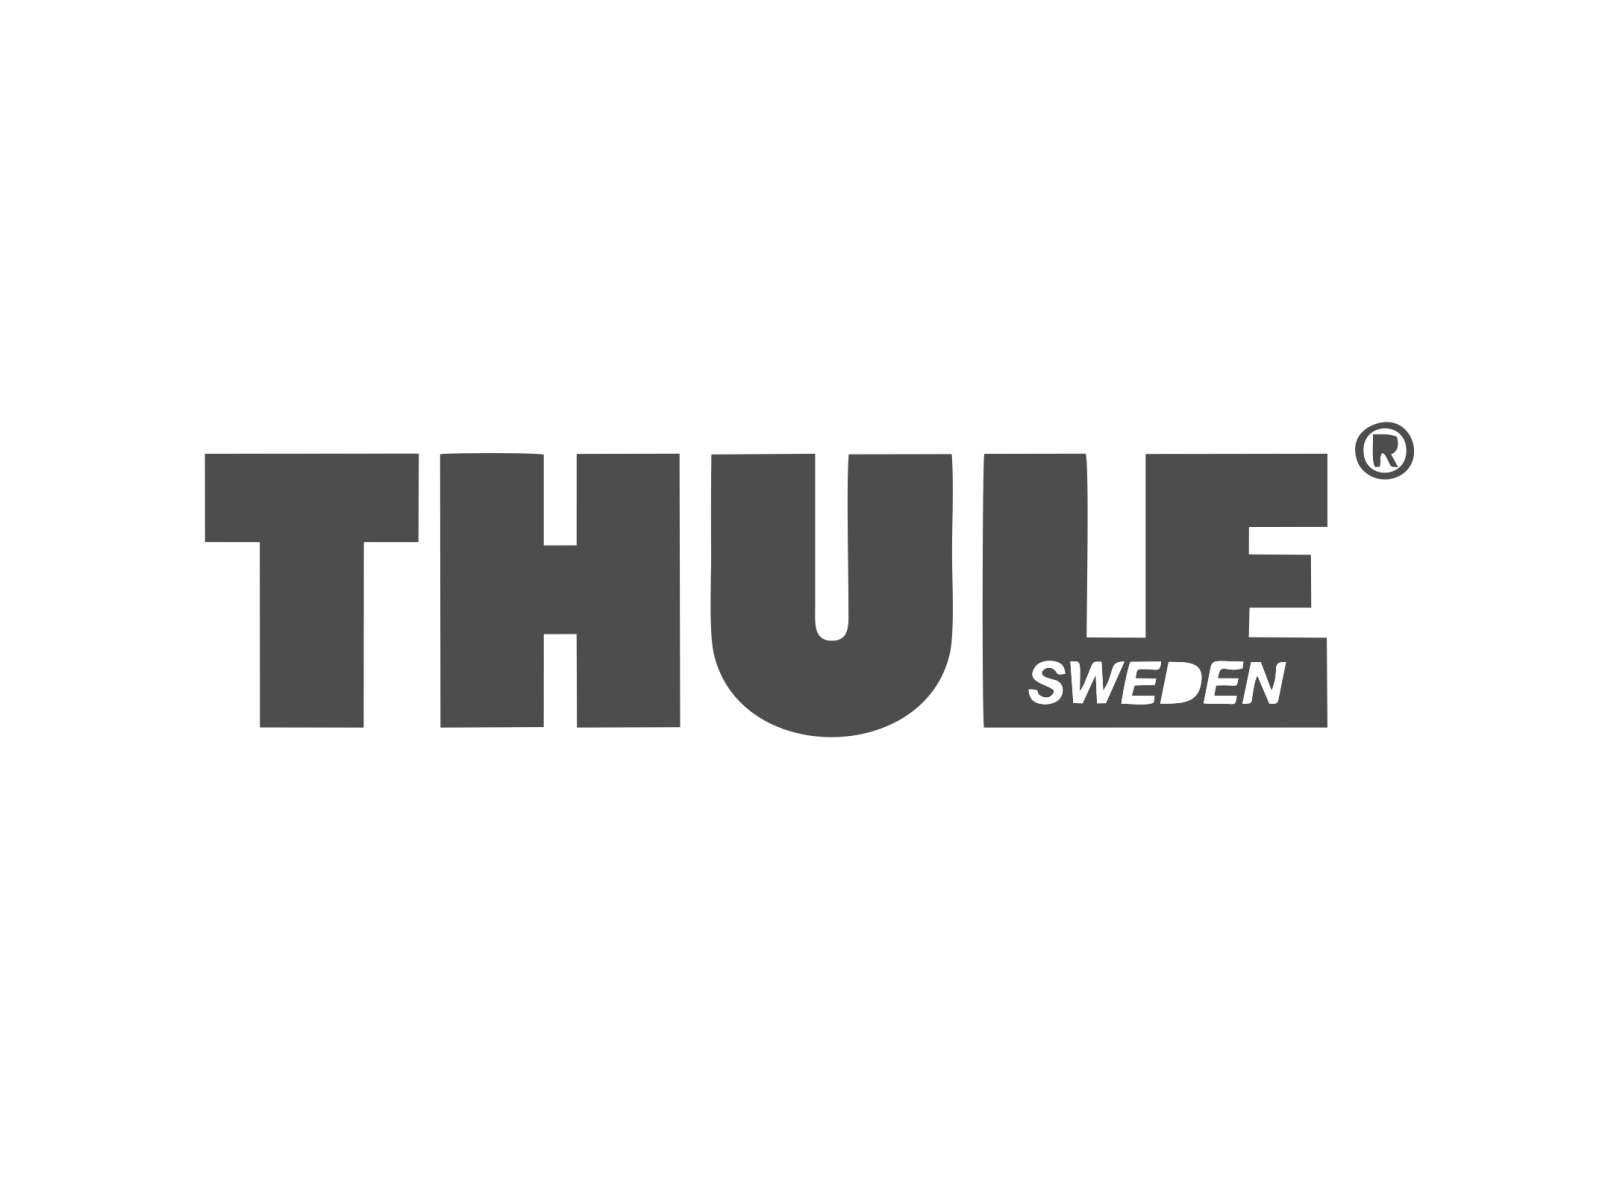 thule sponsor